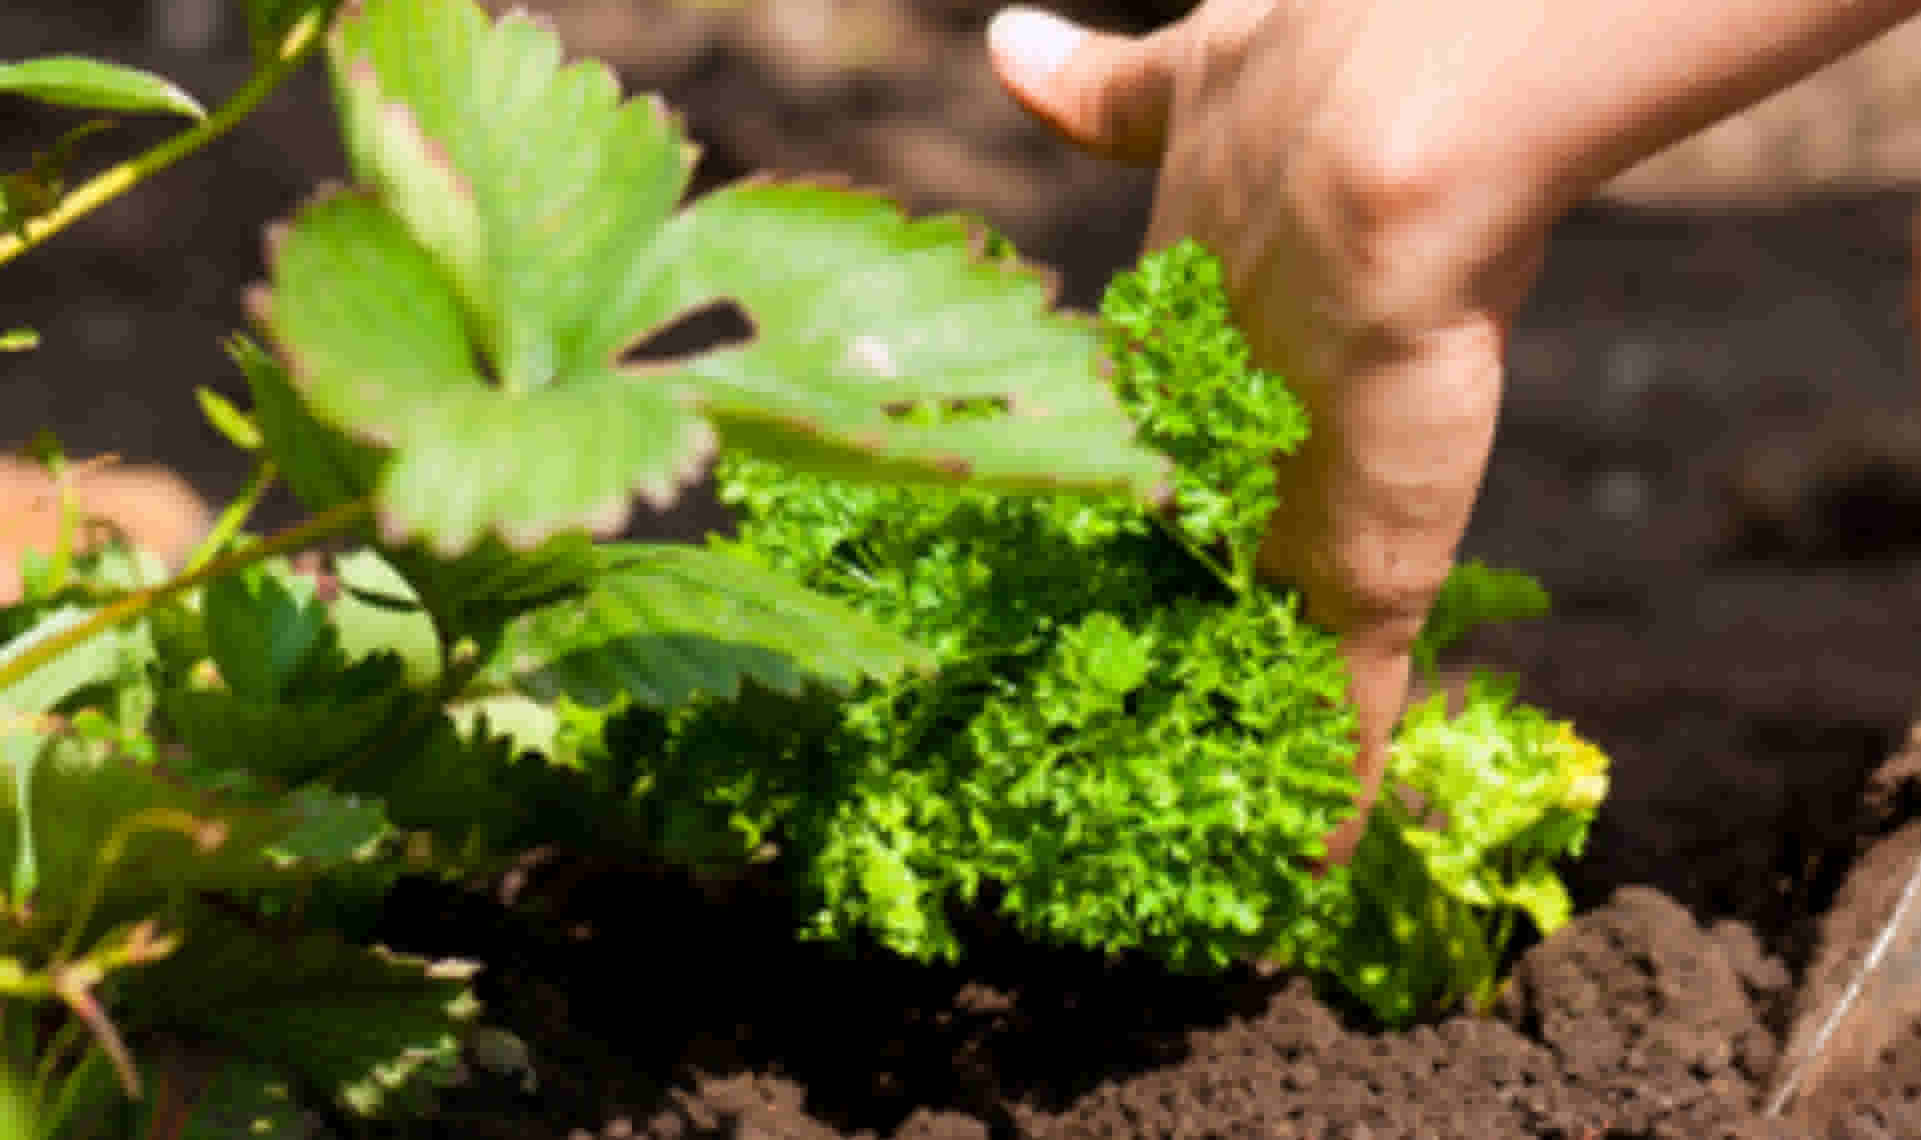 Stap 5 - Test regelmatig de kwaliteit van de compost 